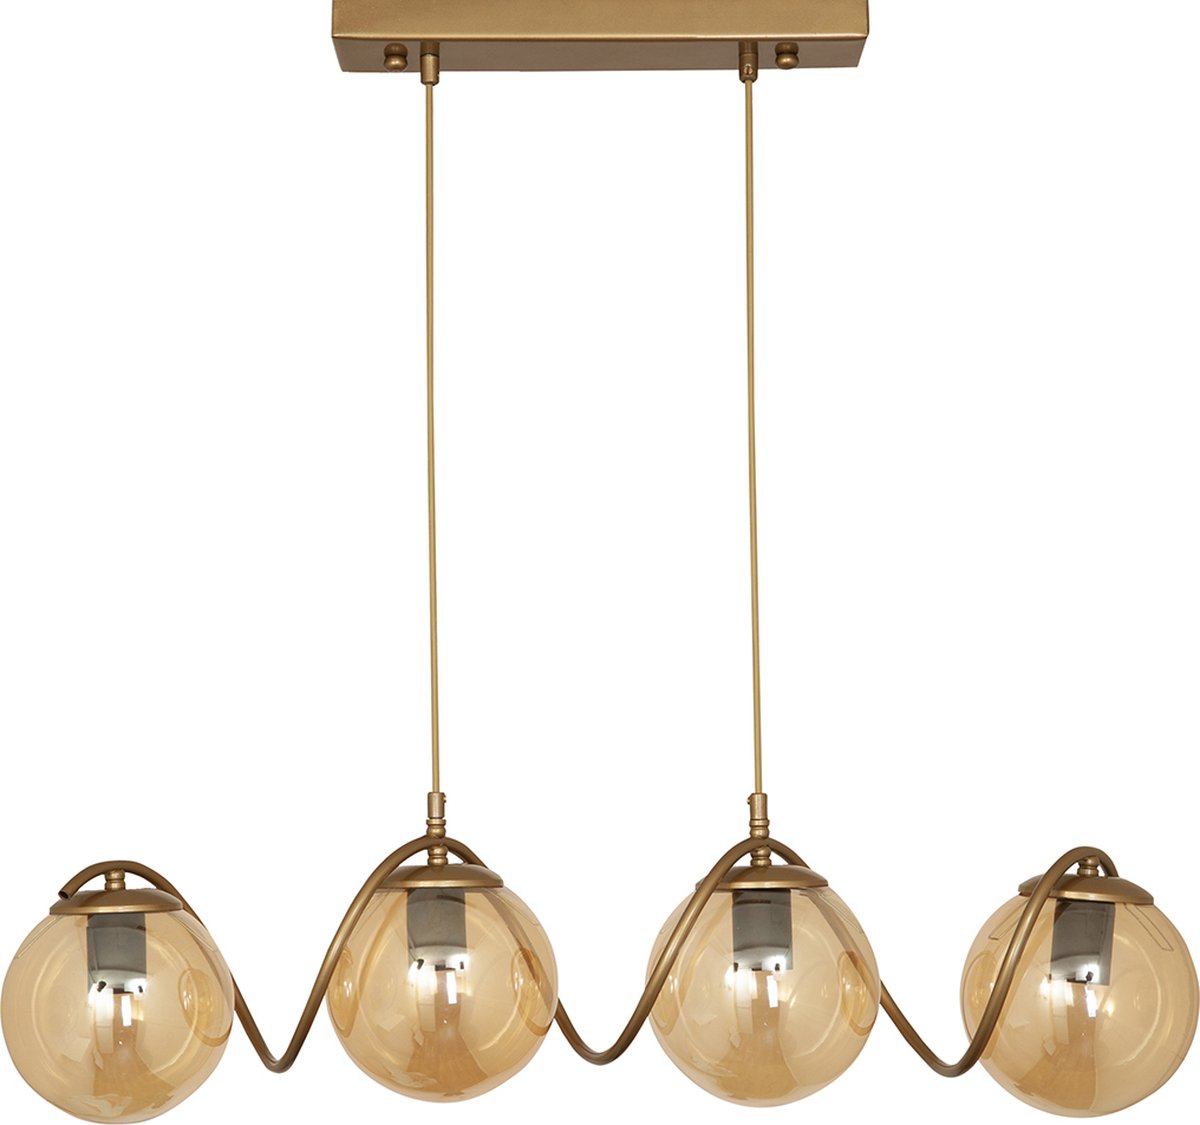 Chesto Delta Honey Gold - Luxe Industriële Hanglamp - 4 Glazen Bollen Honinggoud - Eetkamer, Woonkamer